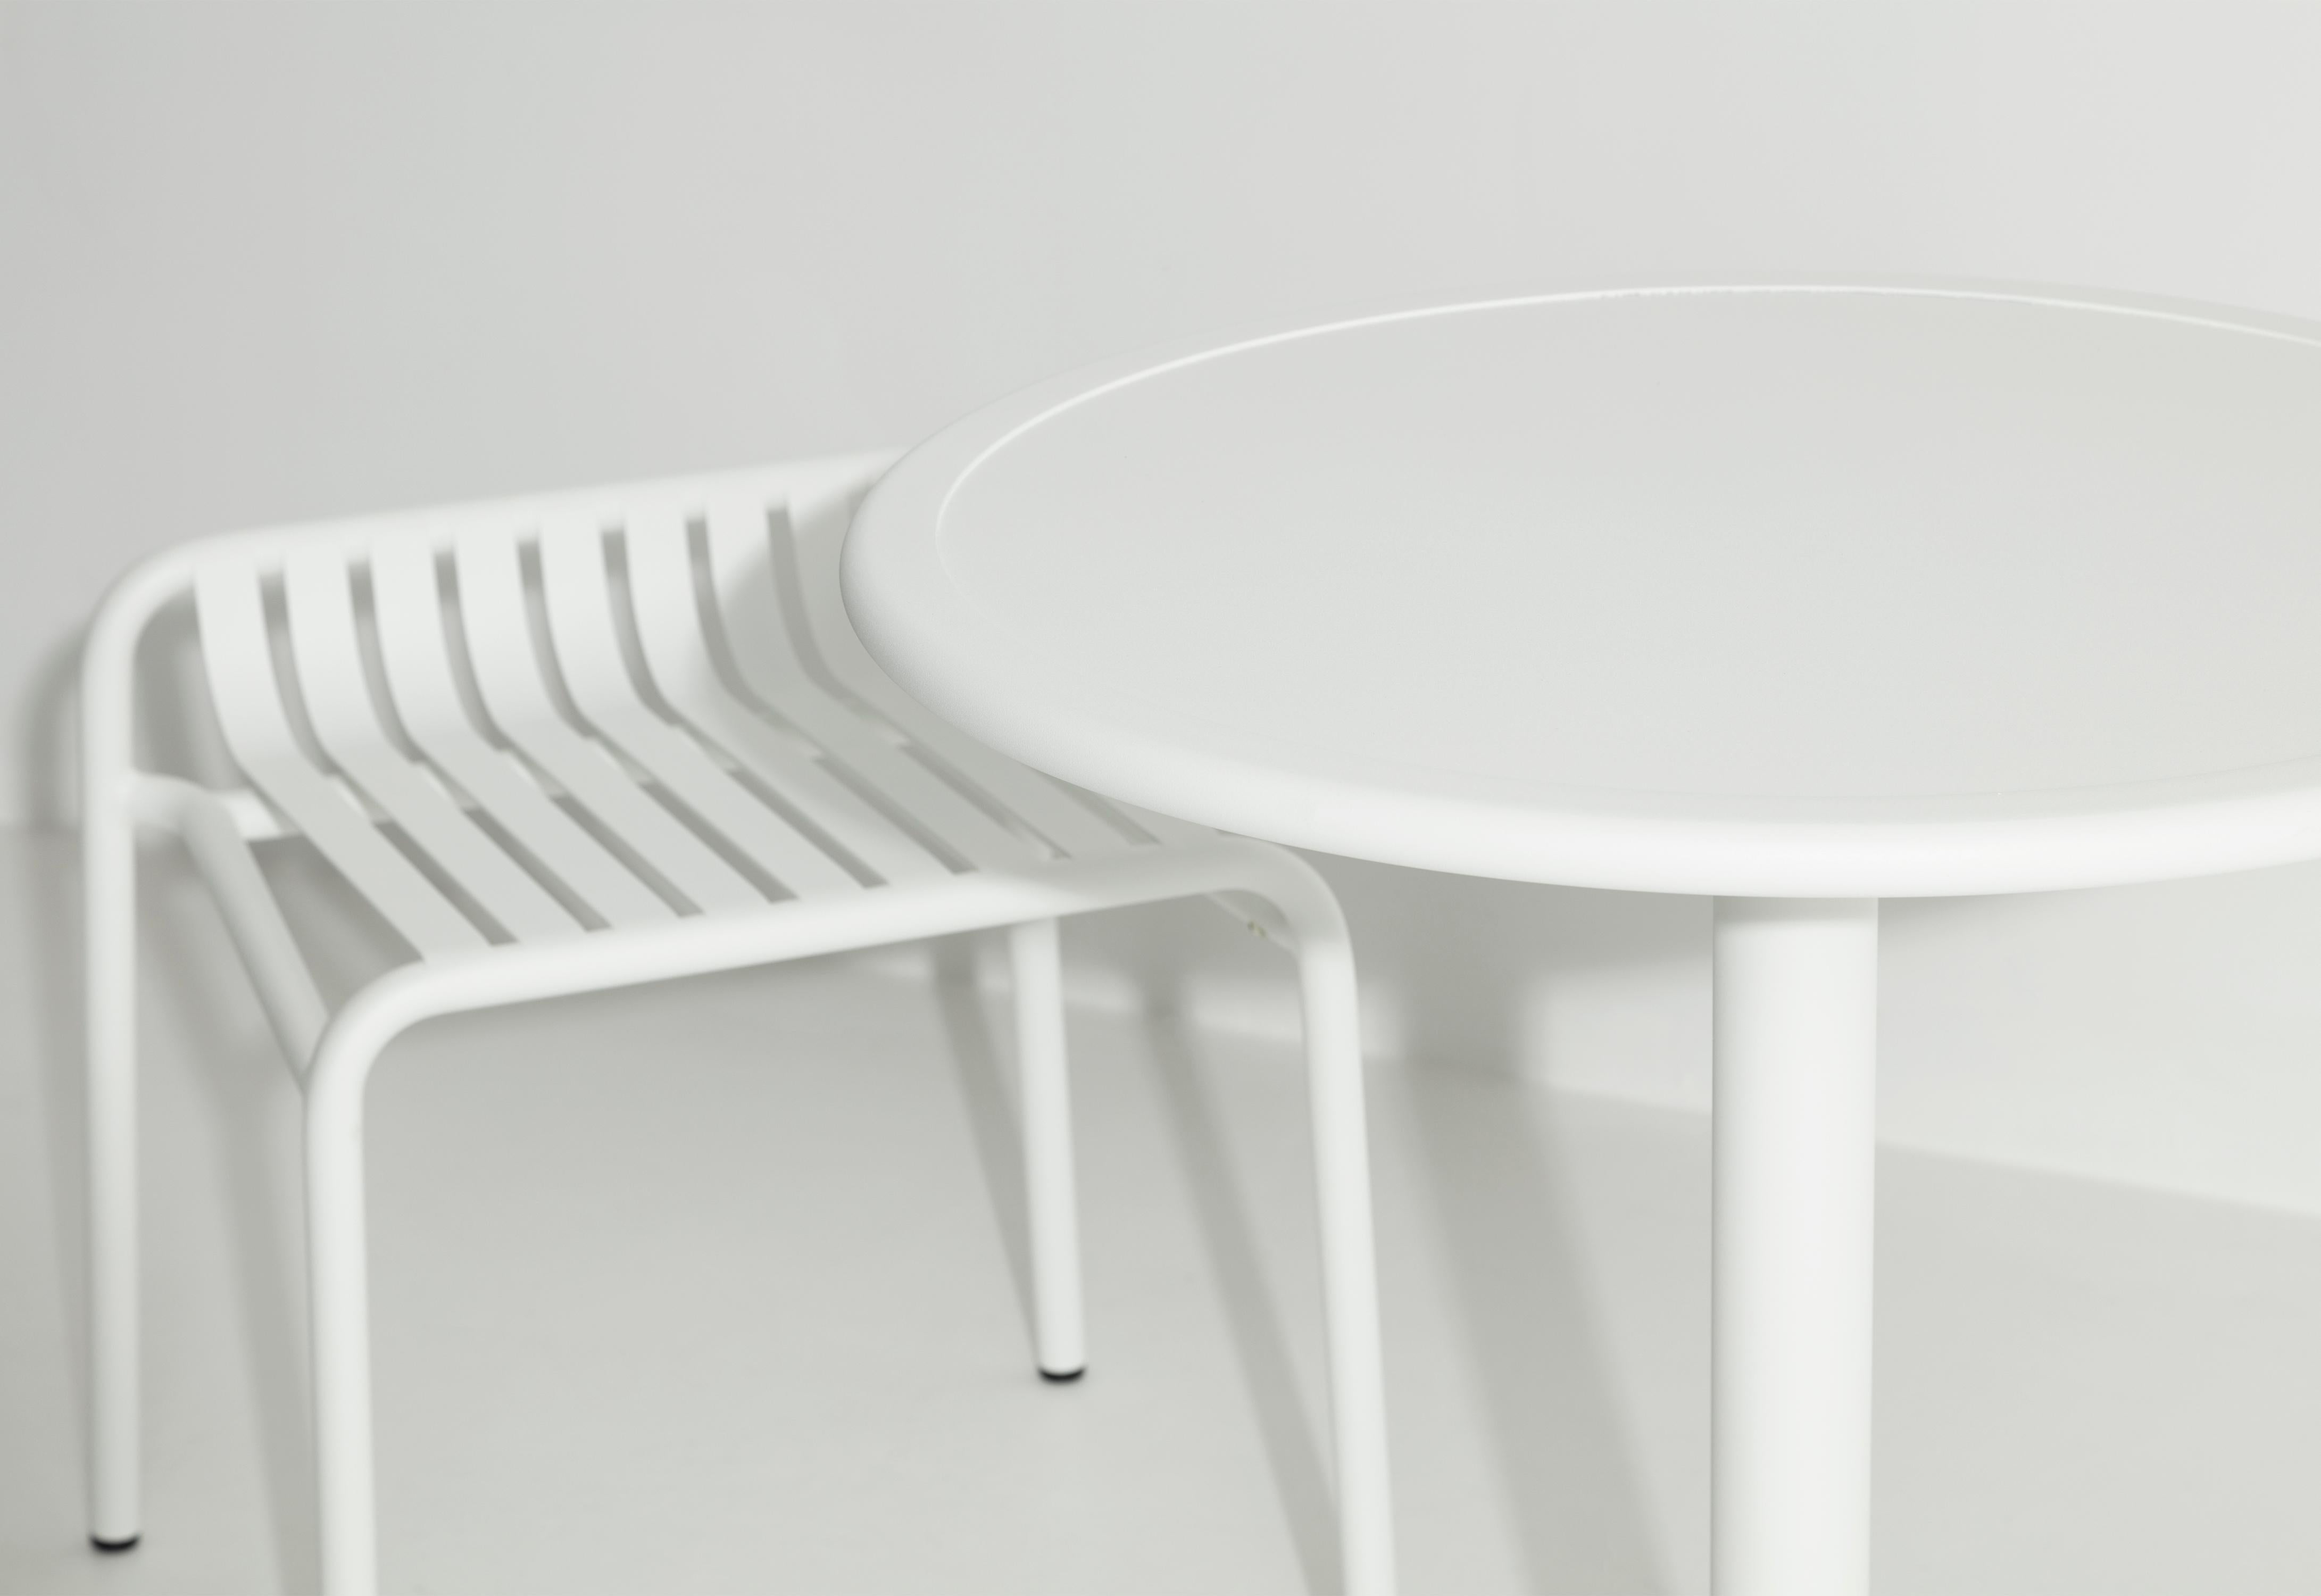 Petite Friture Week-End Bistro Round Dining Table en aluminium blanc par Studio BrichetZiegler, 2017

La collection week-end est une gamme complète de mobilier d'extérieur, en peinture époxy aluminium grainé, finition mate, qui comprend 18 fonctions